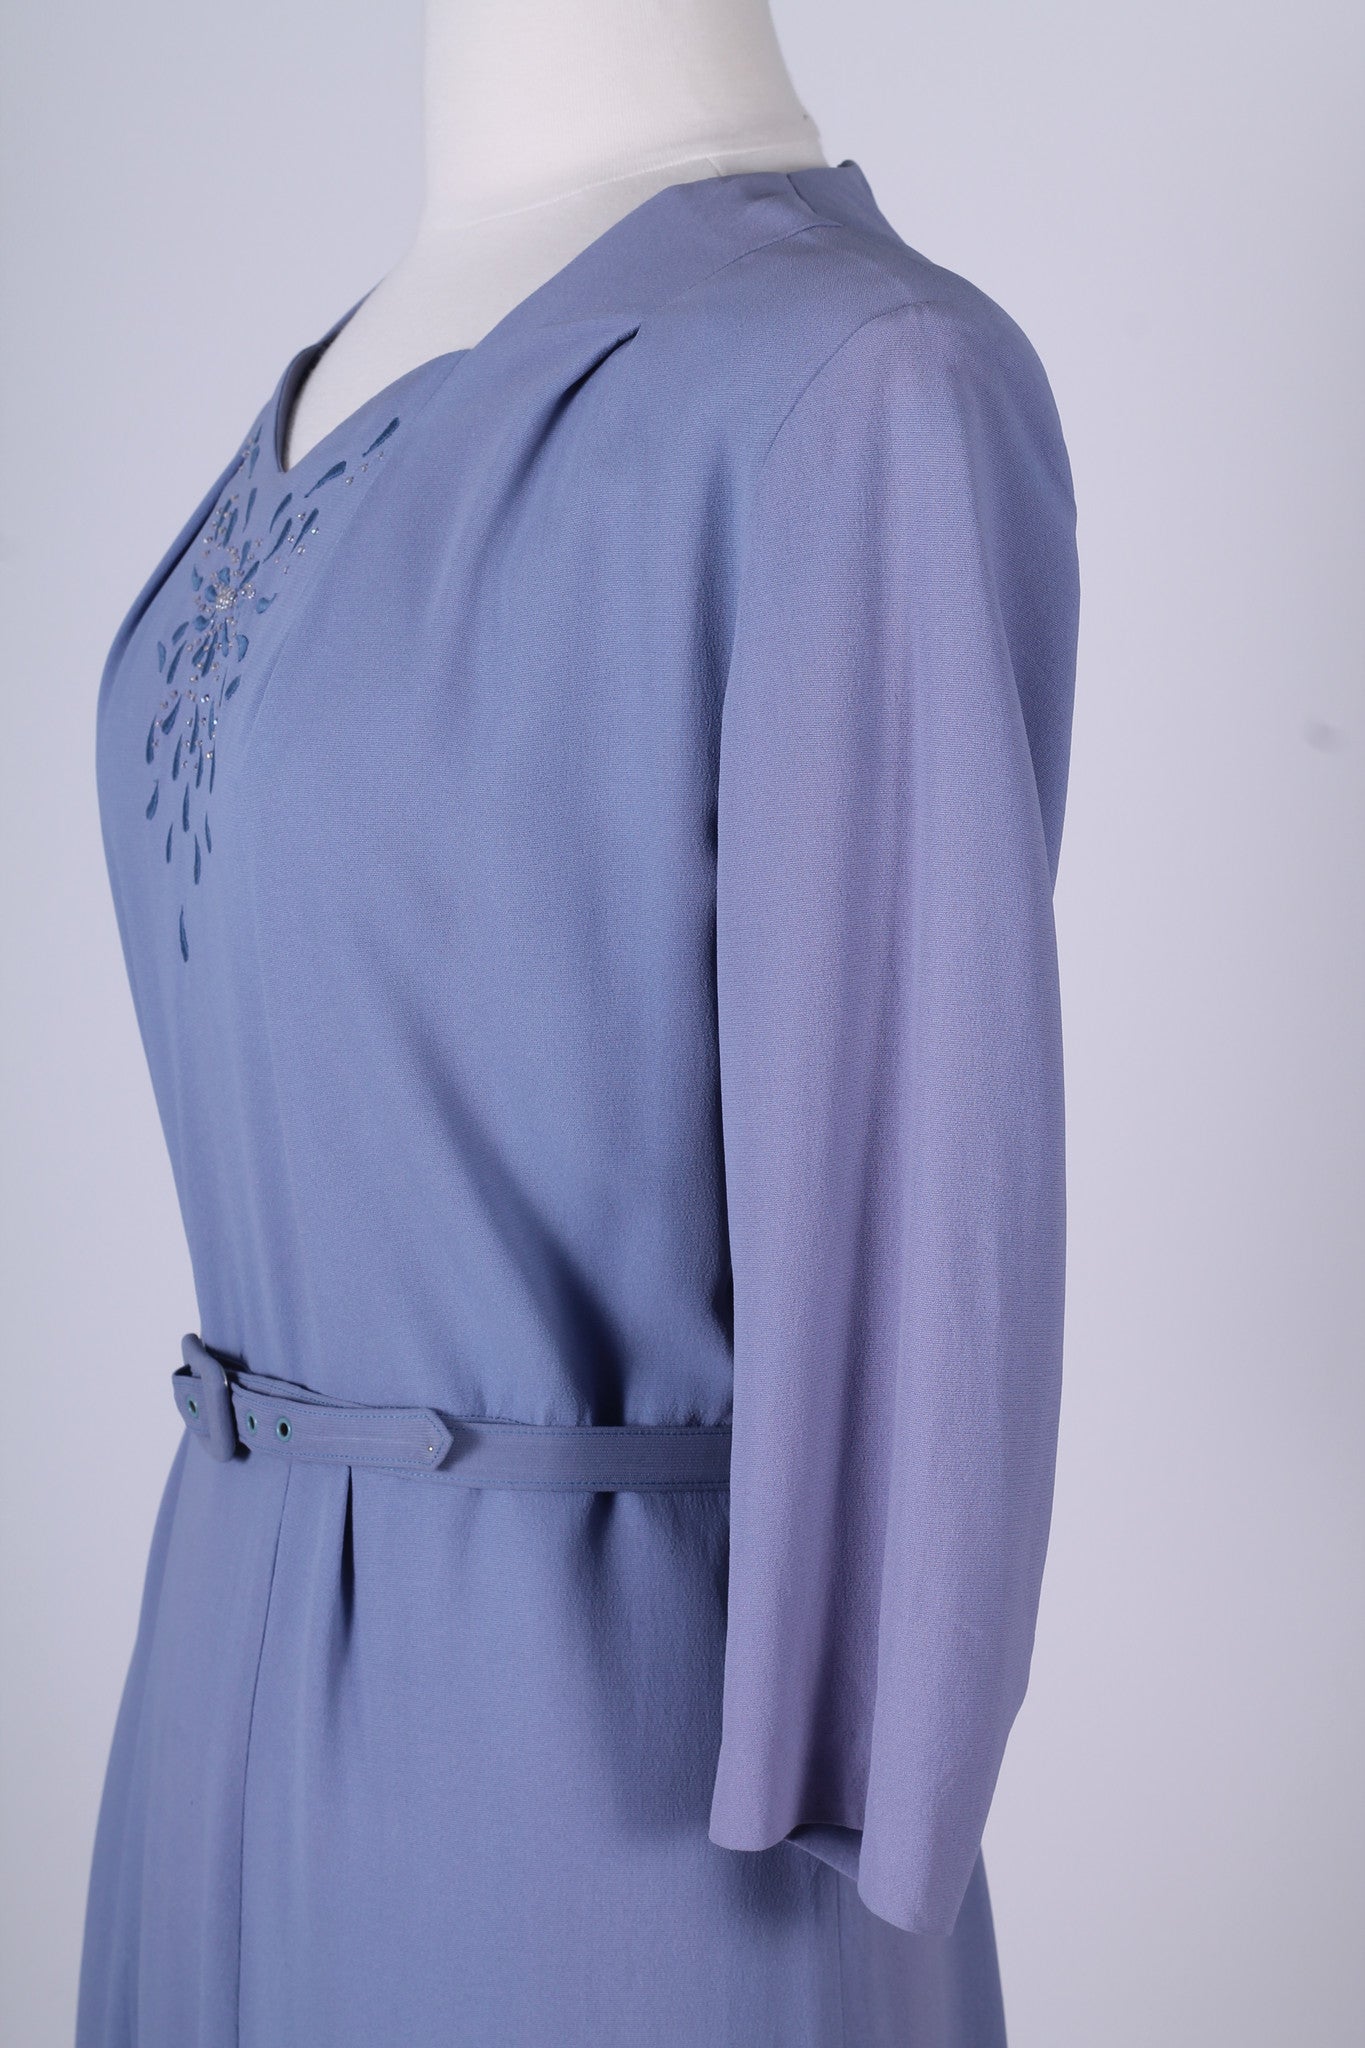 Vintage tøj - Lyselilla kjole med broderi 1940. L - Vintage kjoler fra 1940'erne - Vintage Divine - 5